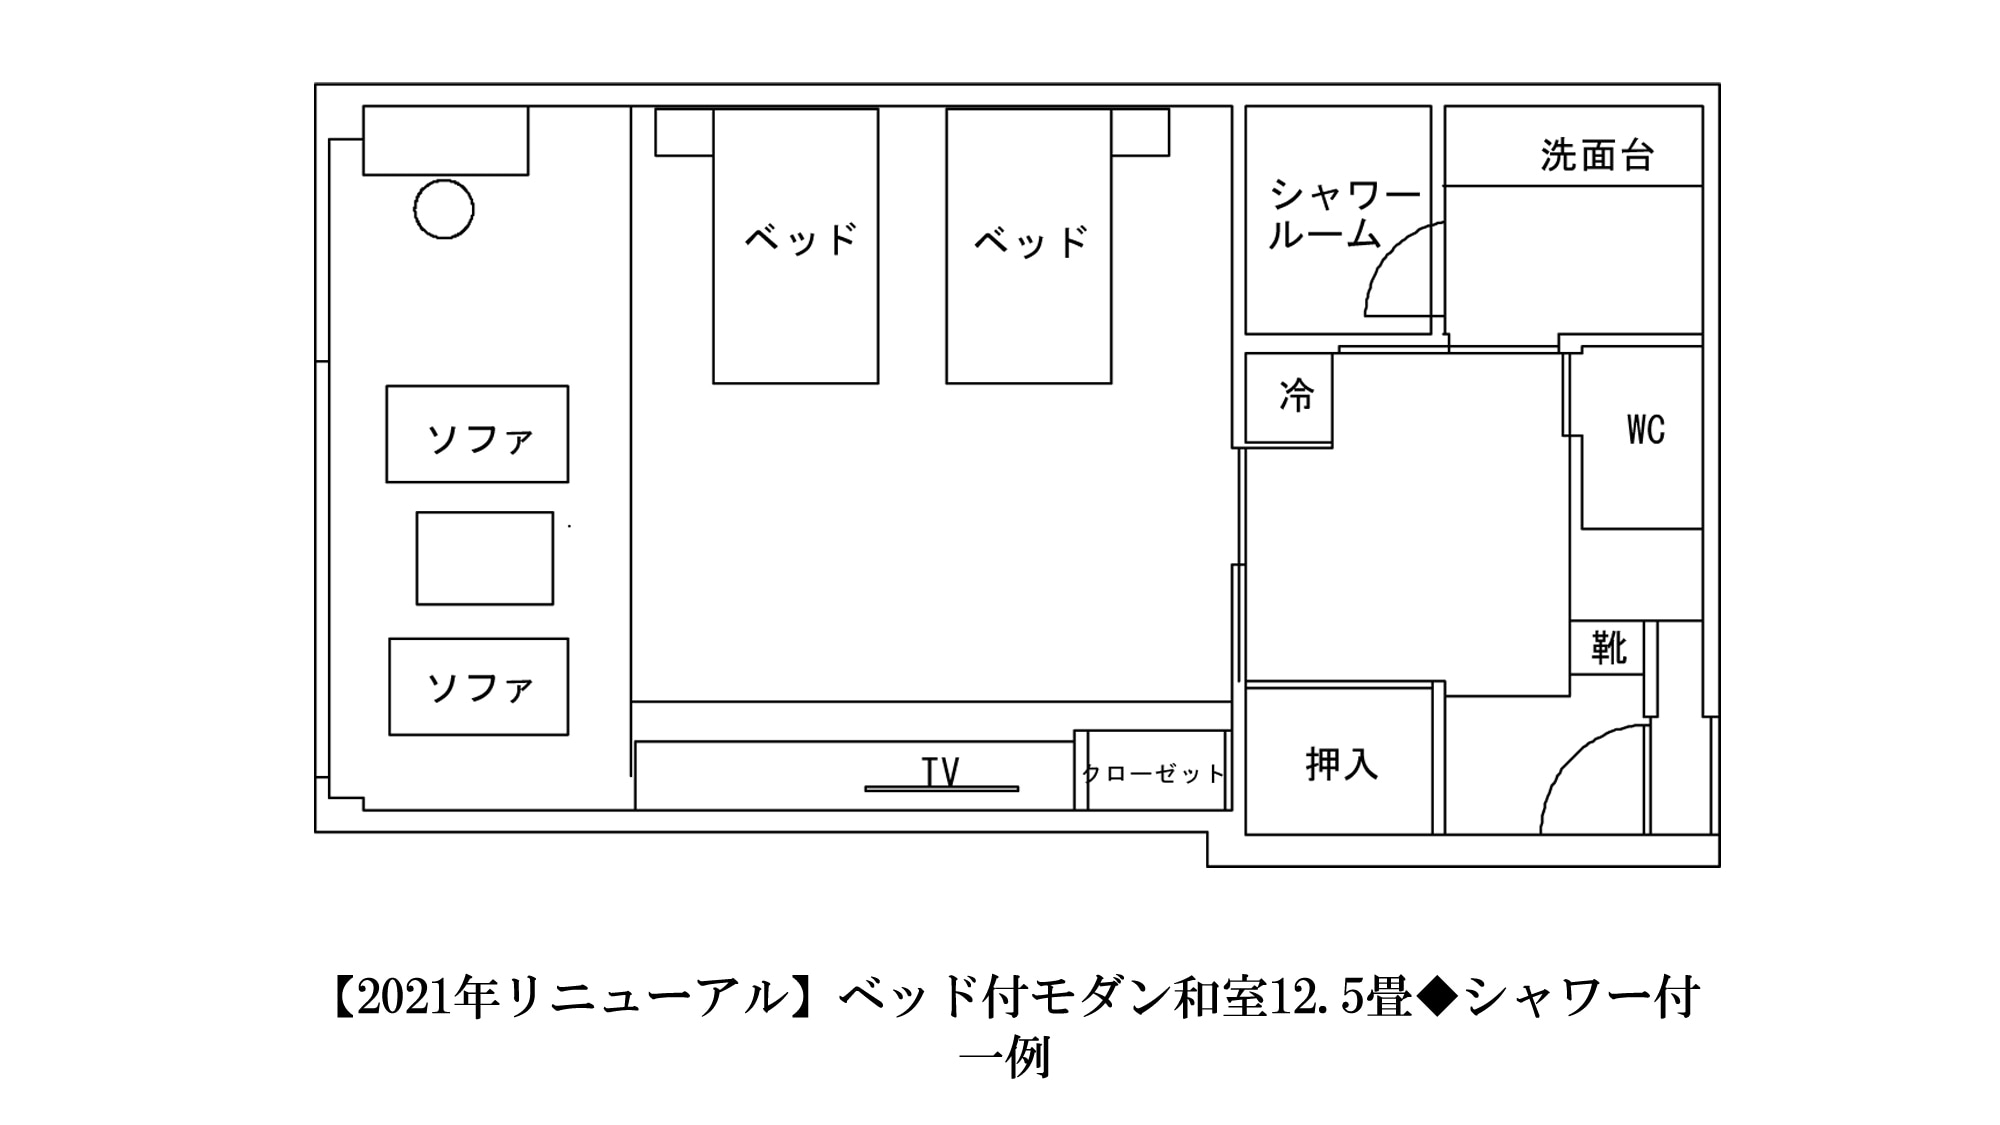 [半套房] 2009 年秋季装修的日式房间的 2 张床 ◆ 53 平方米带淋浴的例子